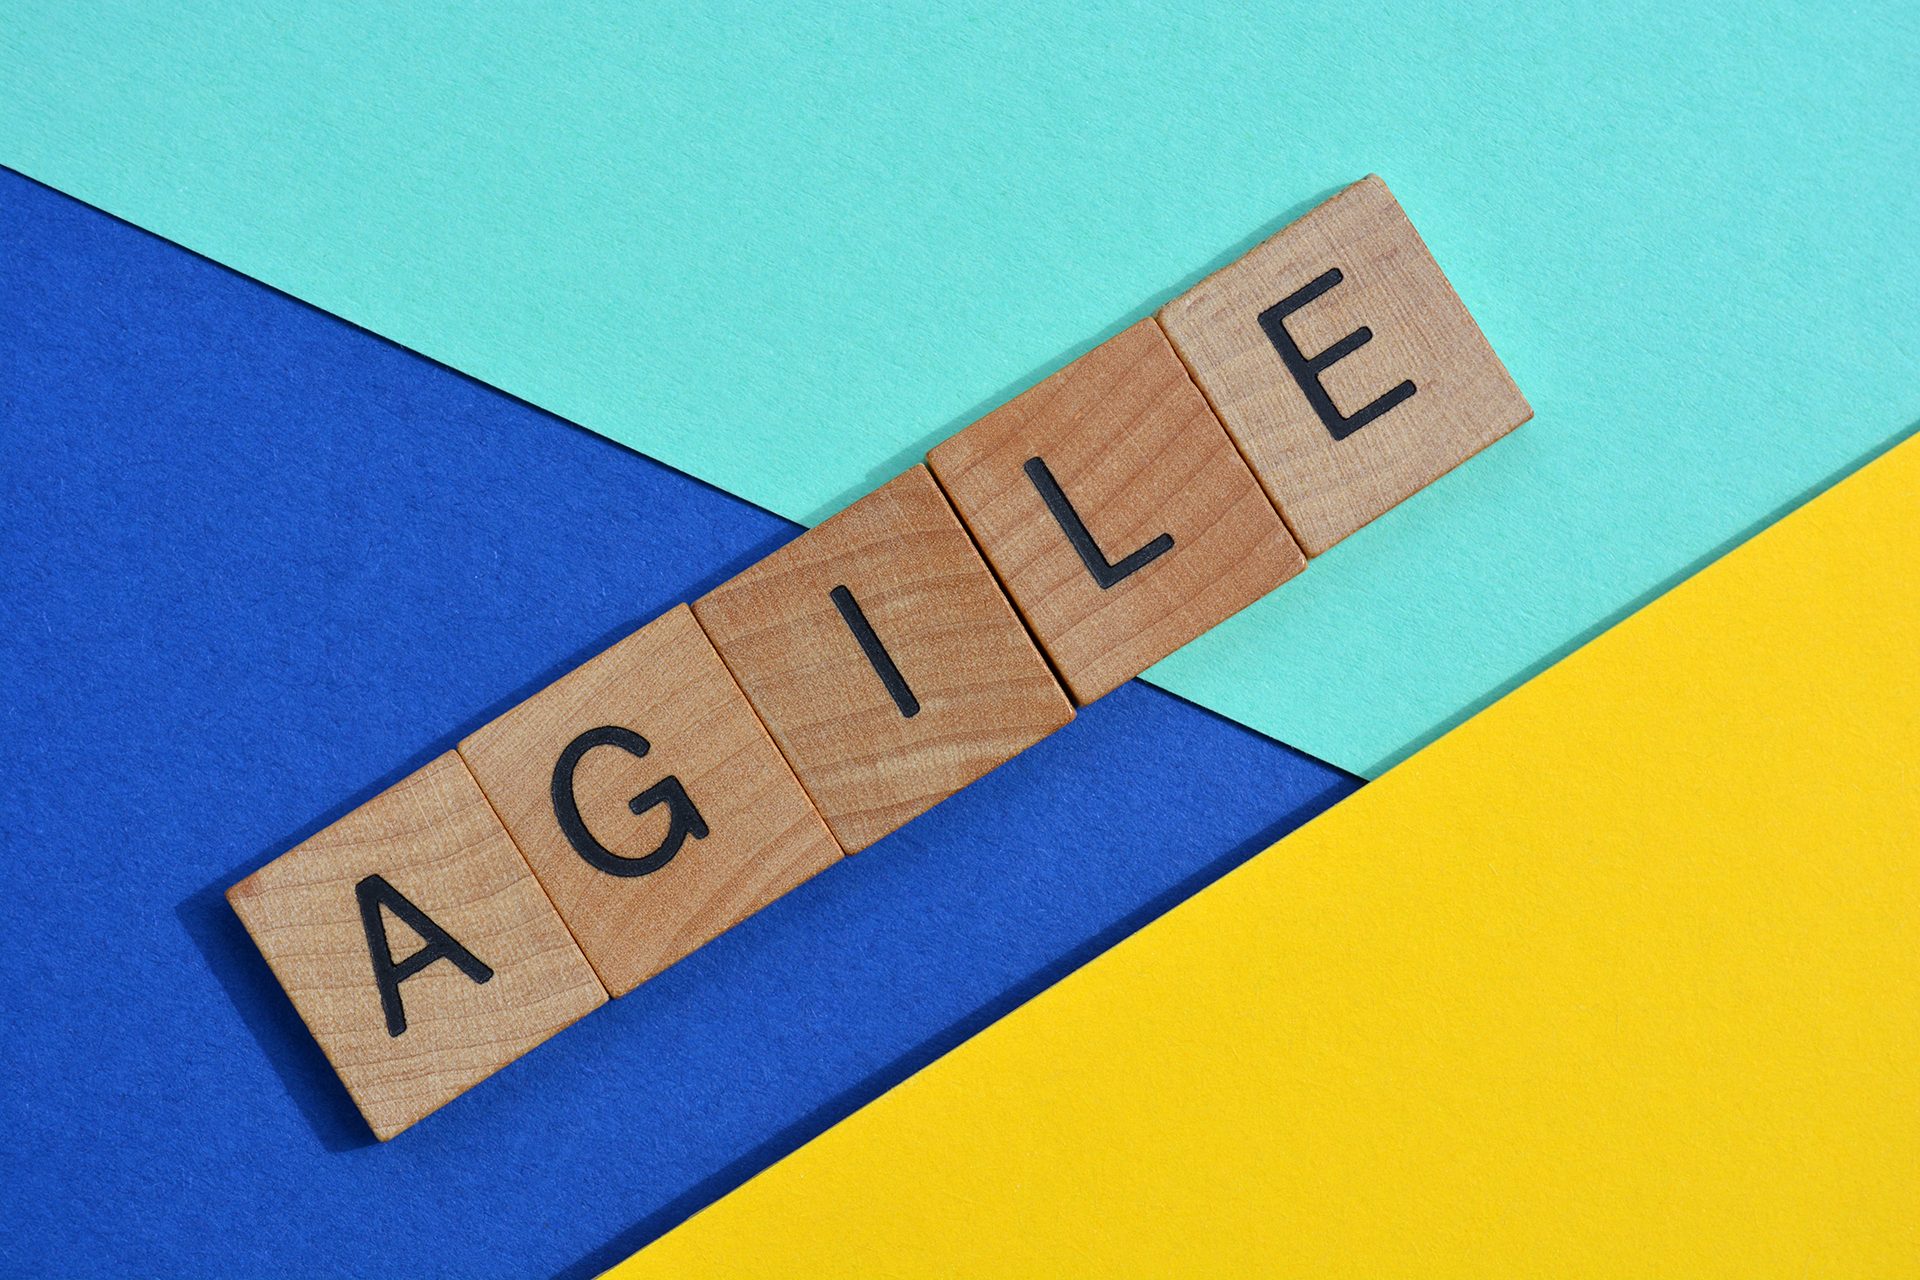 Agile – elastyczność i ciągła adaptacja
